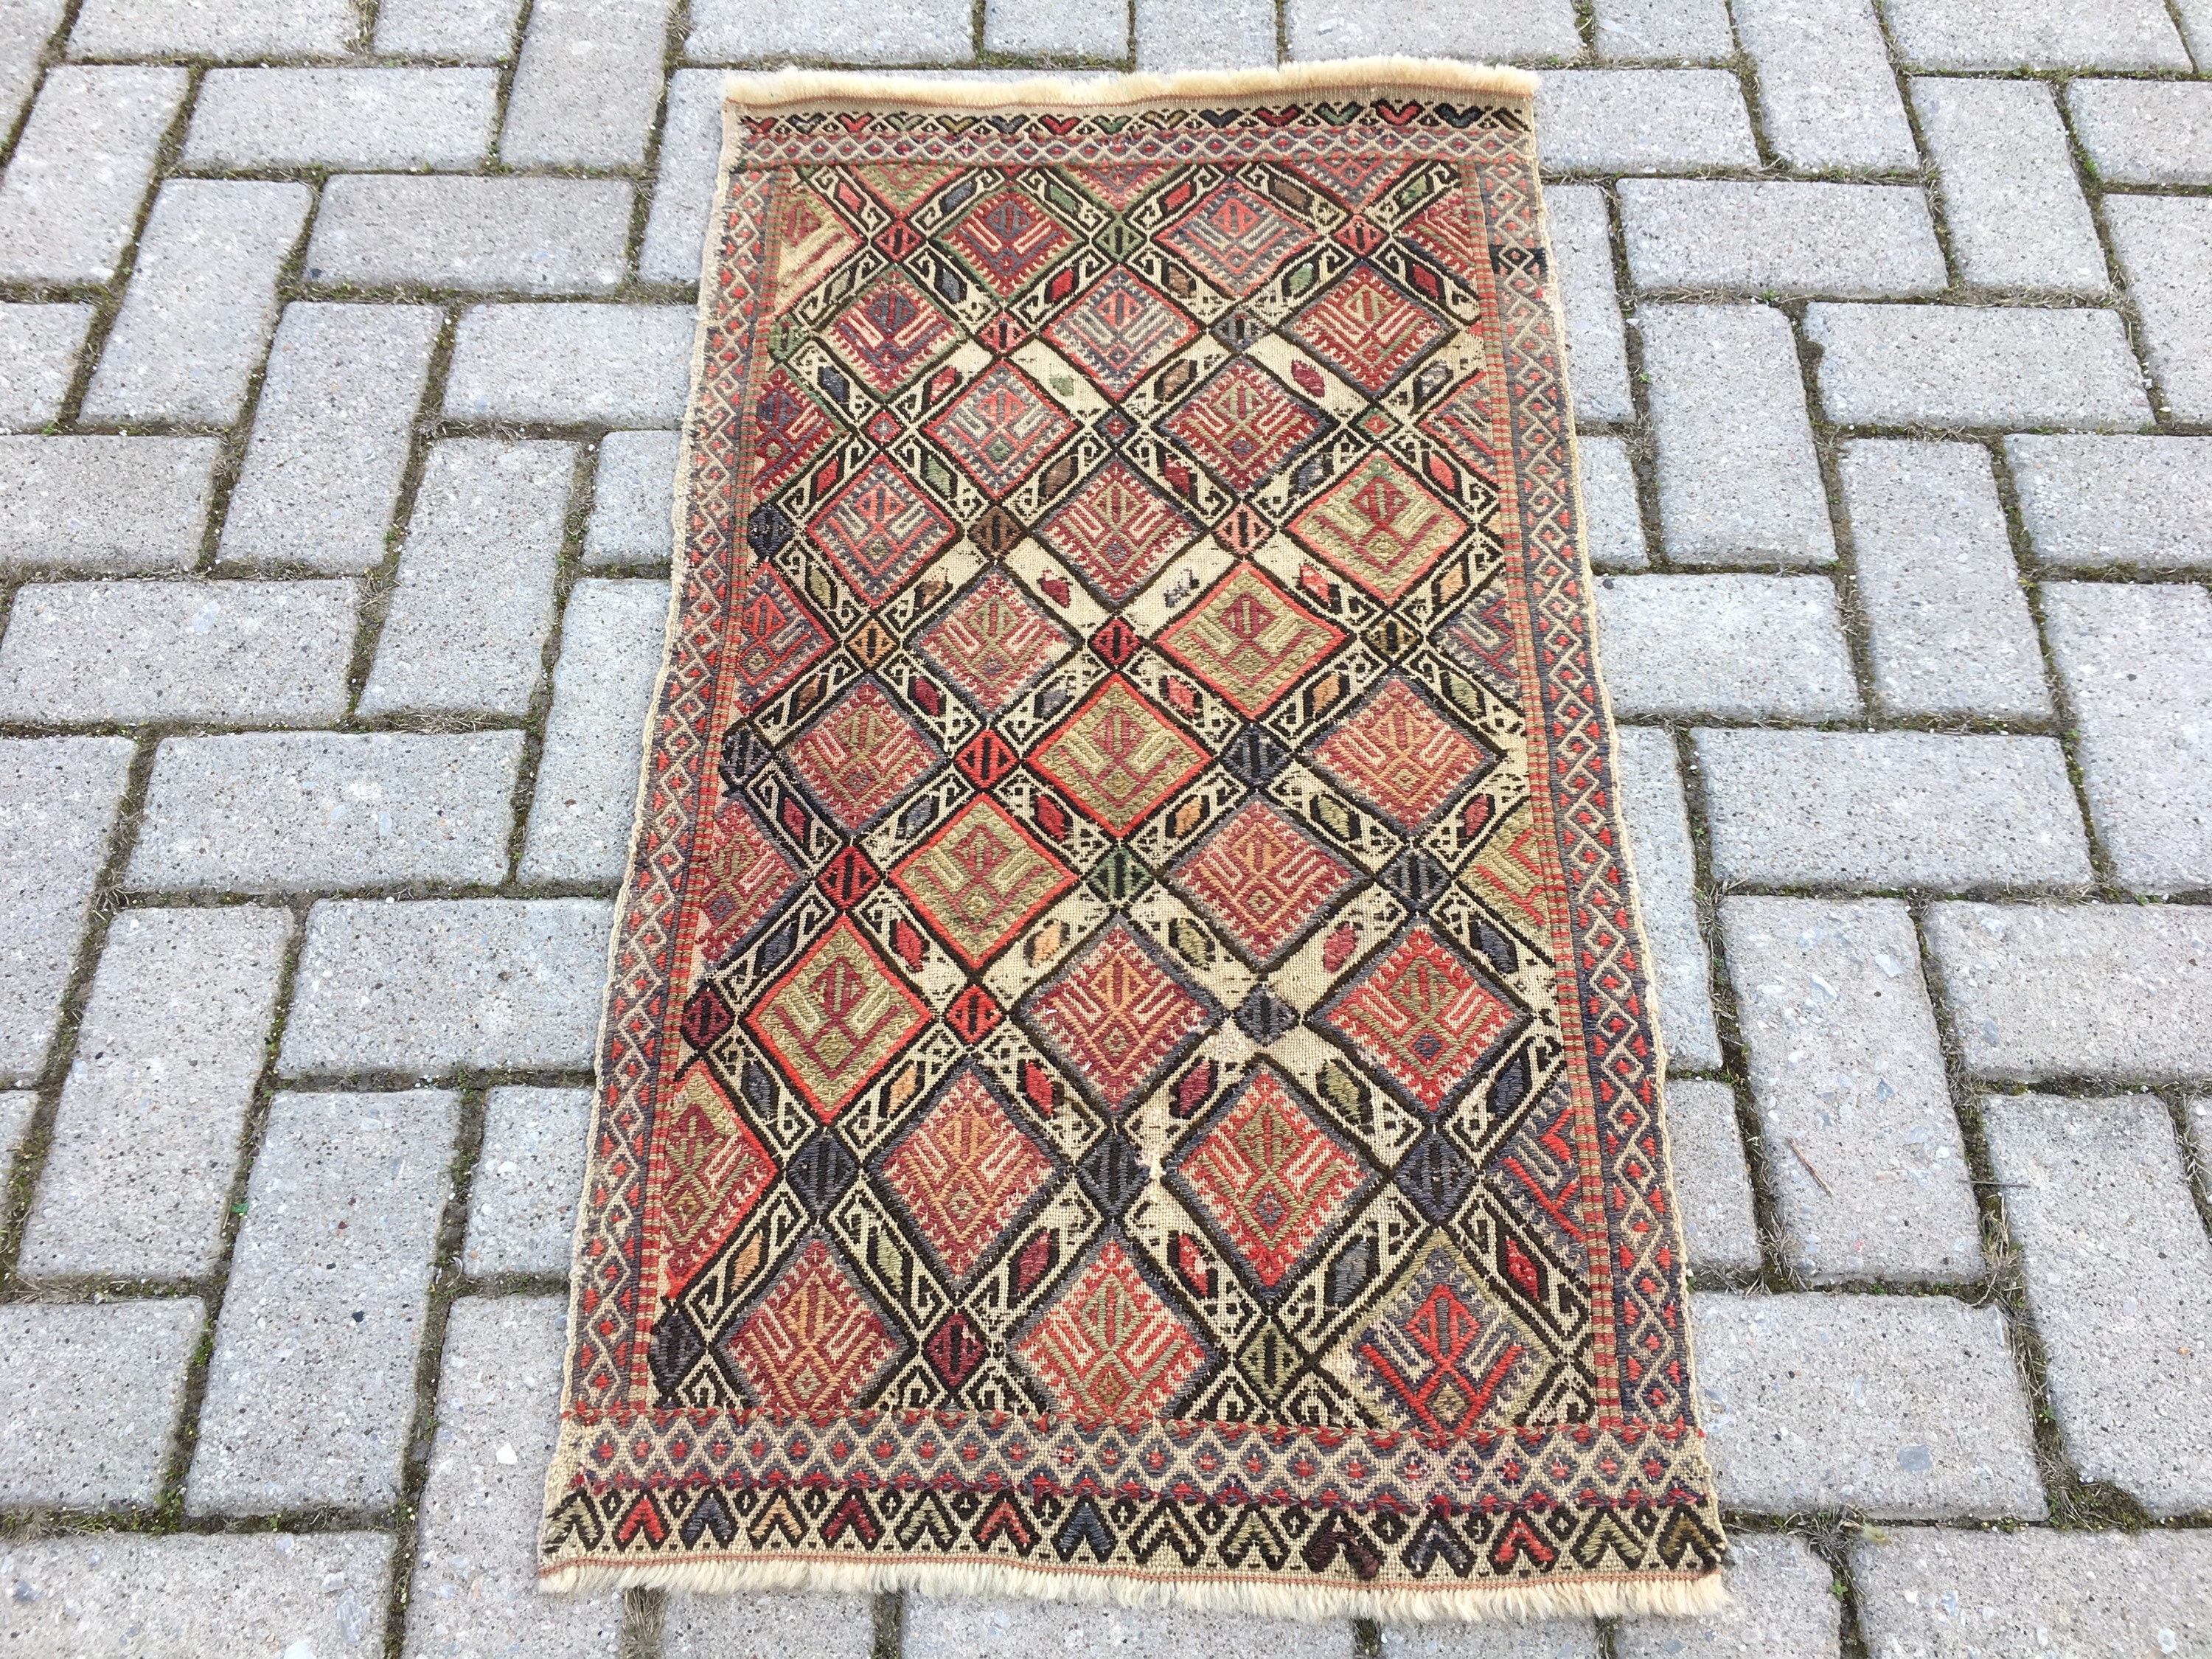 Vintage small rug Small kilim rug Colorful small rug 396 Turkish small rug Colorful small kilim rug Bohemian small rug